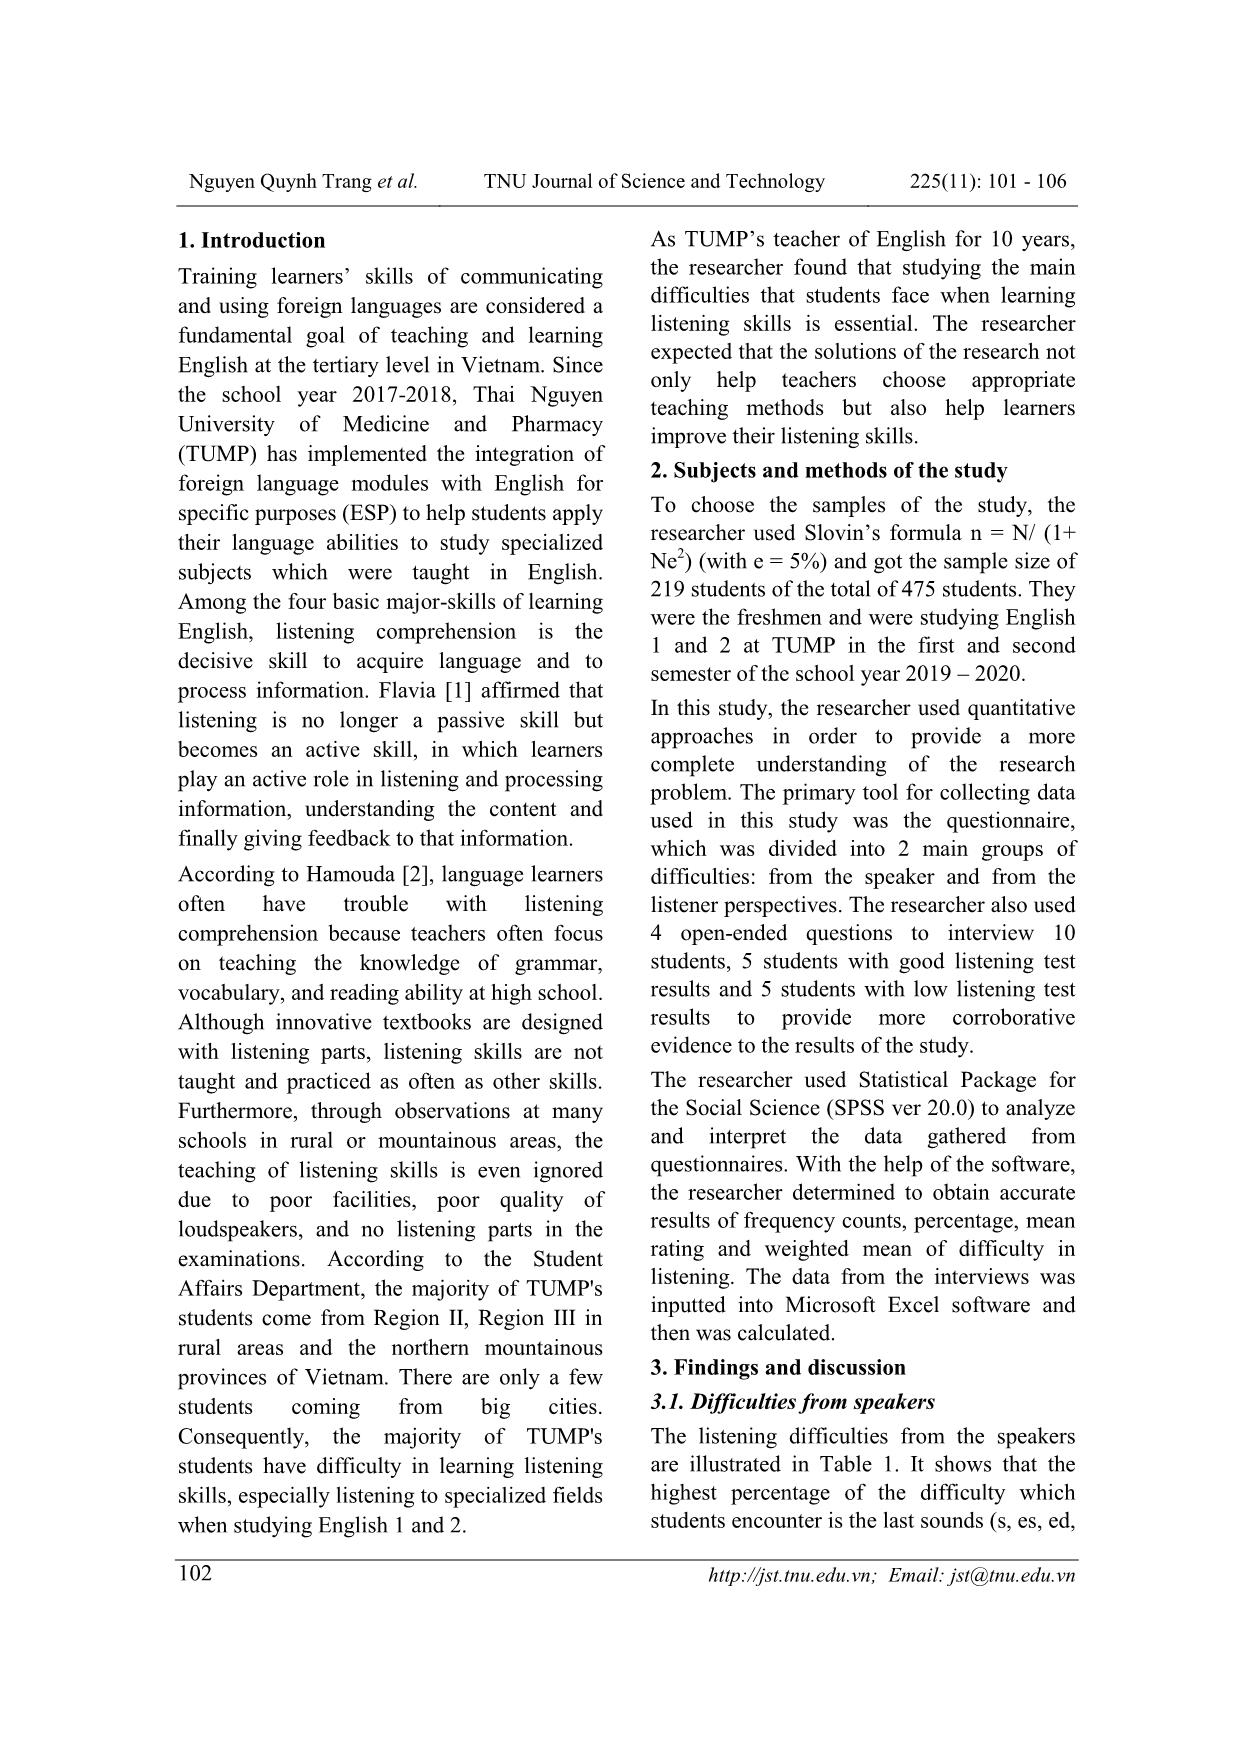 Khảo sát những khó khăn trong việc học kỹ năng nghe của sinh viên bác sĩ y khoa tại trường đại học y dược đại học Thái Nguyên trang 2